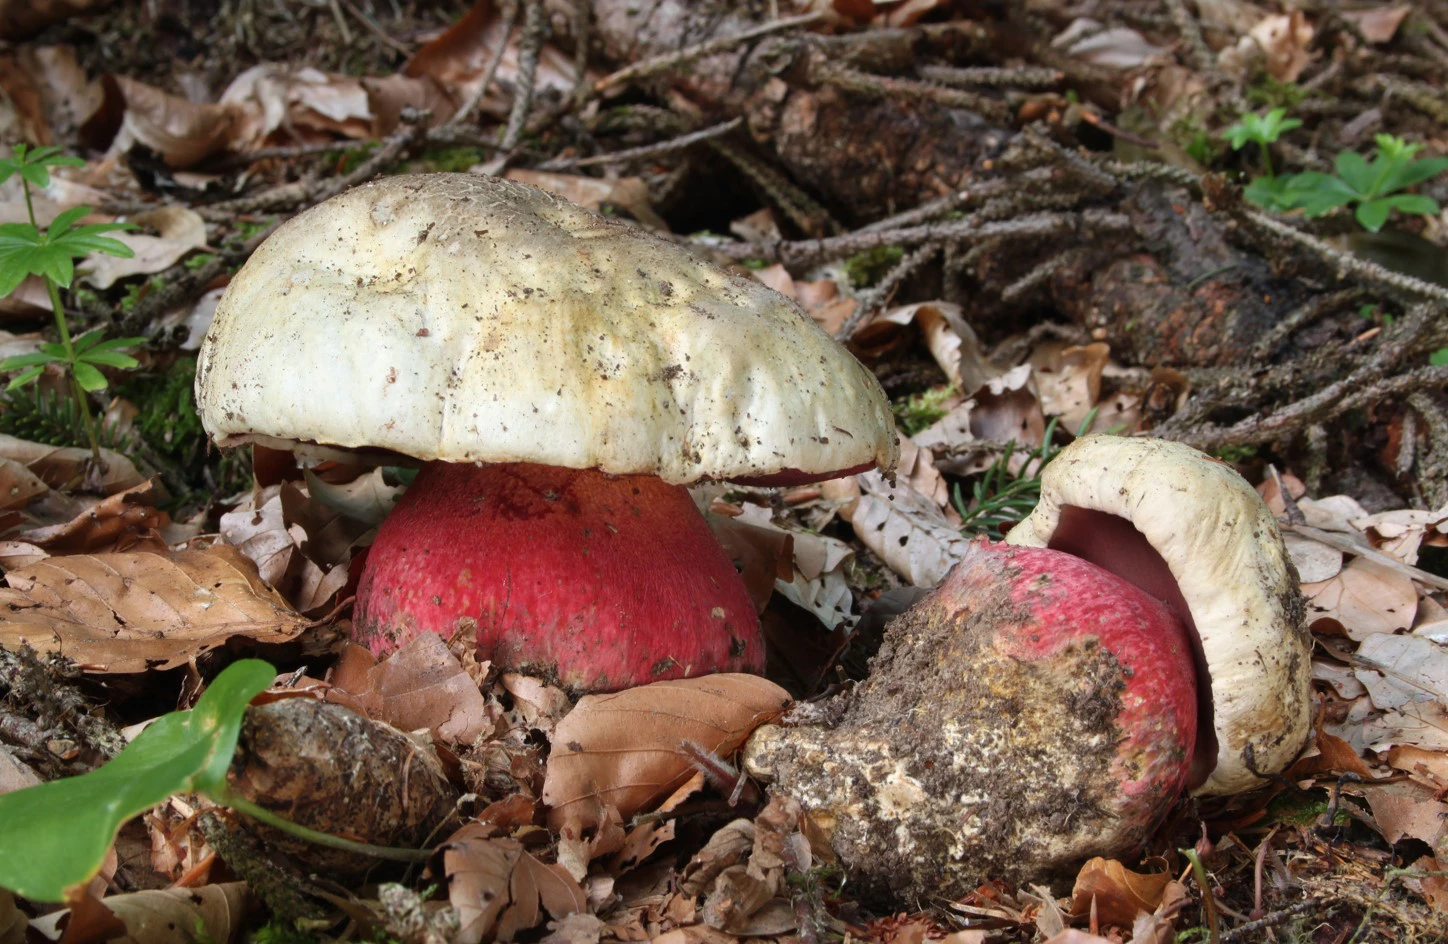 <p>Сатанинский гриб из рода боровиков в народе прозвали &laquo;лесной черт&raquo;</p>